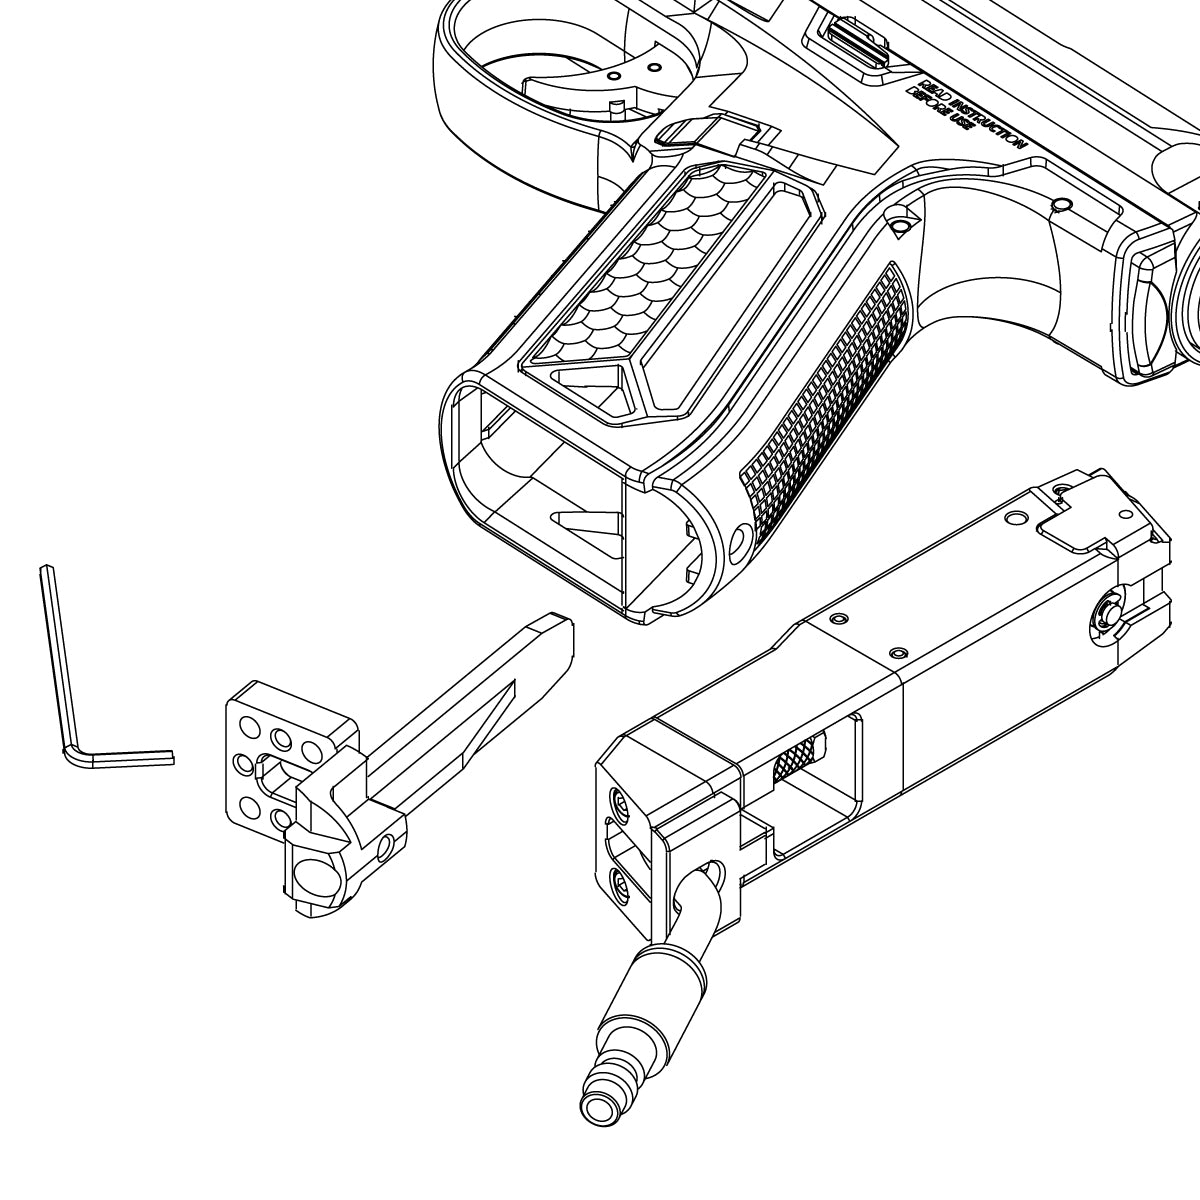 Comment changer de module pour passer de Glock à AAP-01 avec le kit Infinite v2